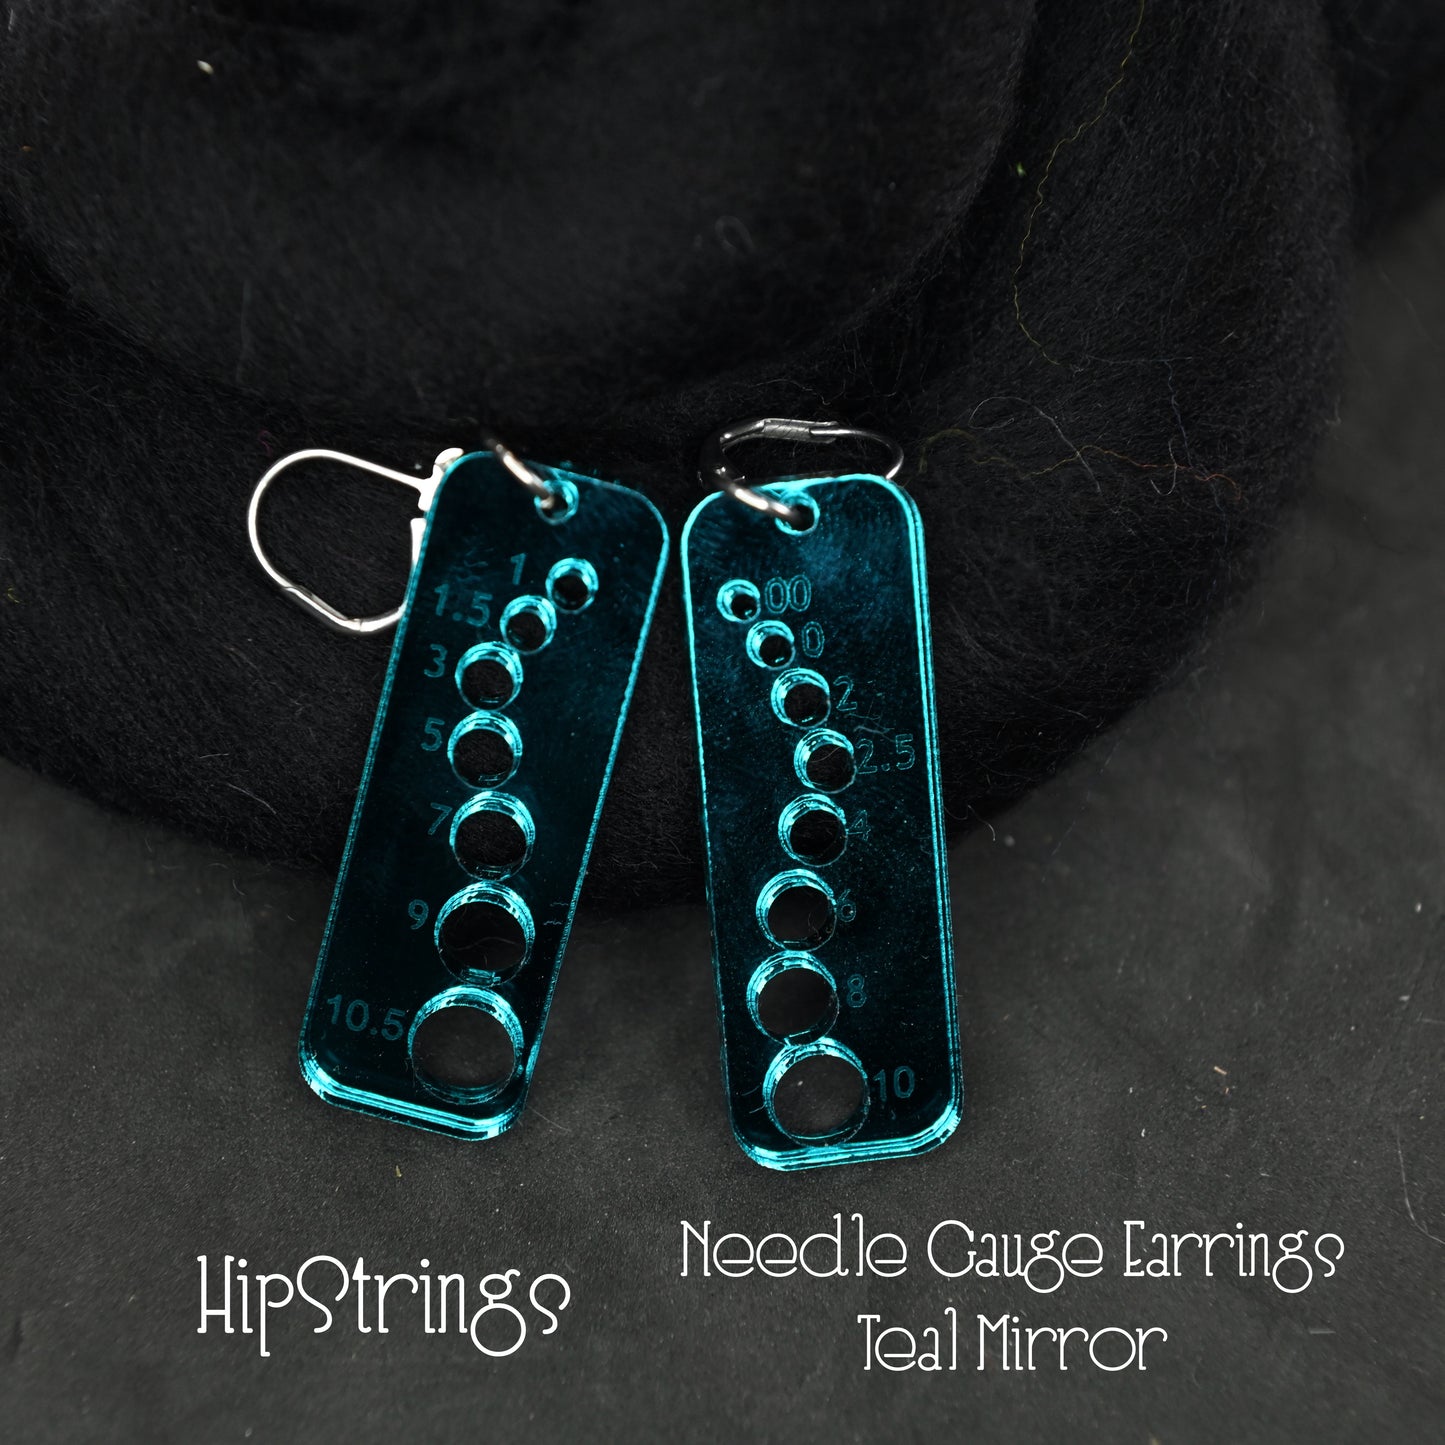 Knitting Needle Gauge Earrings - Assorted Mirrored Acrylic